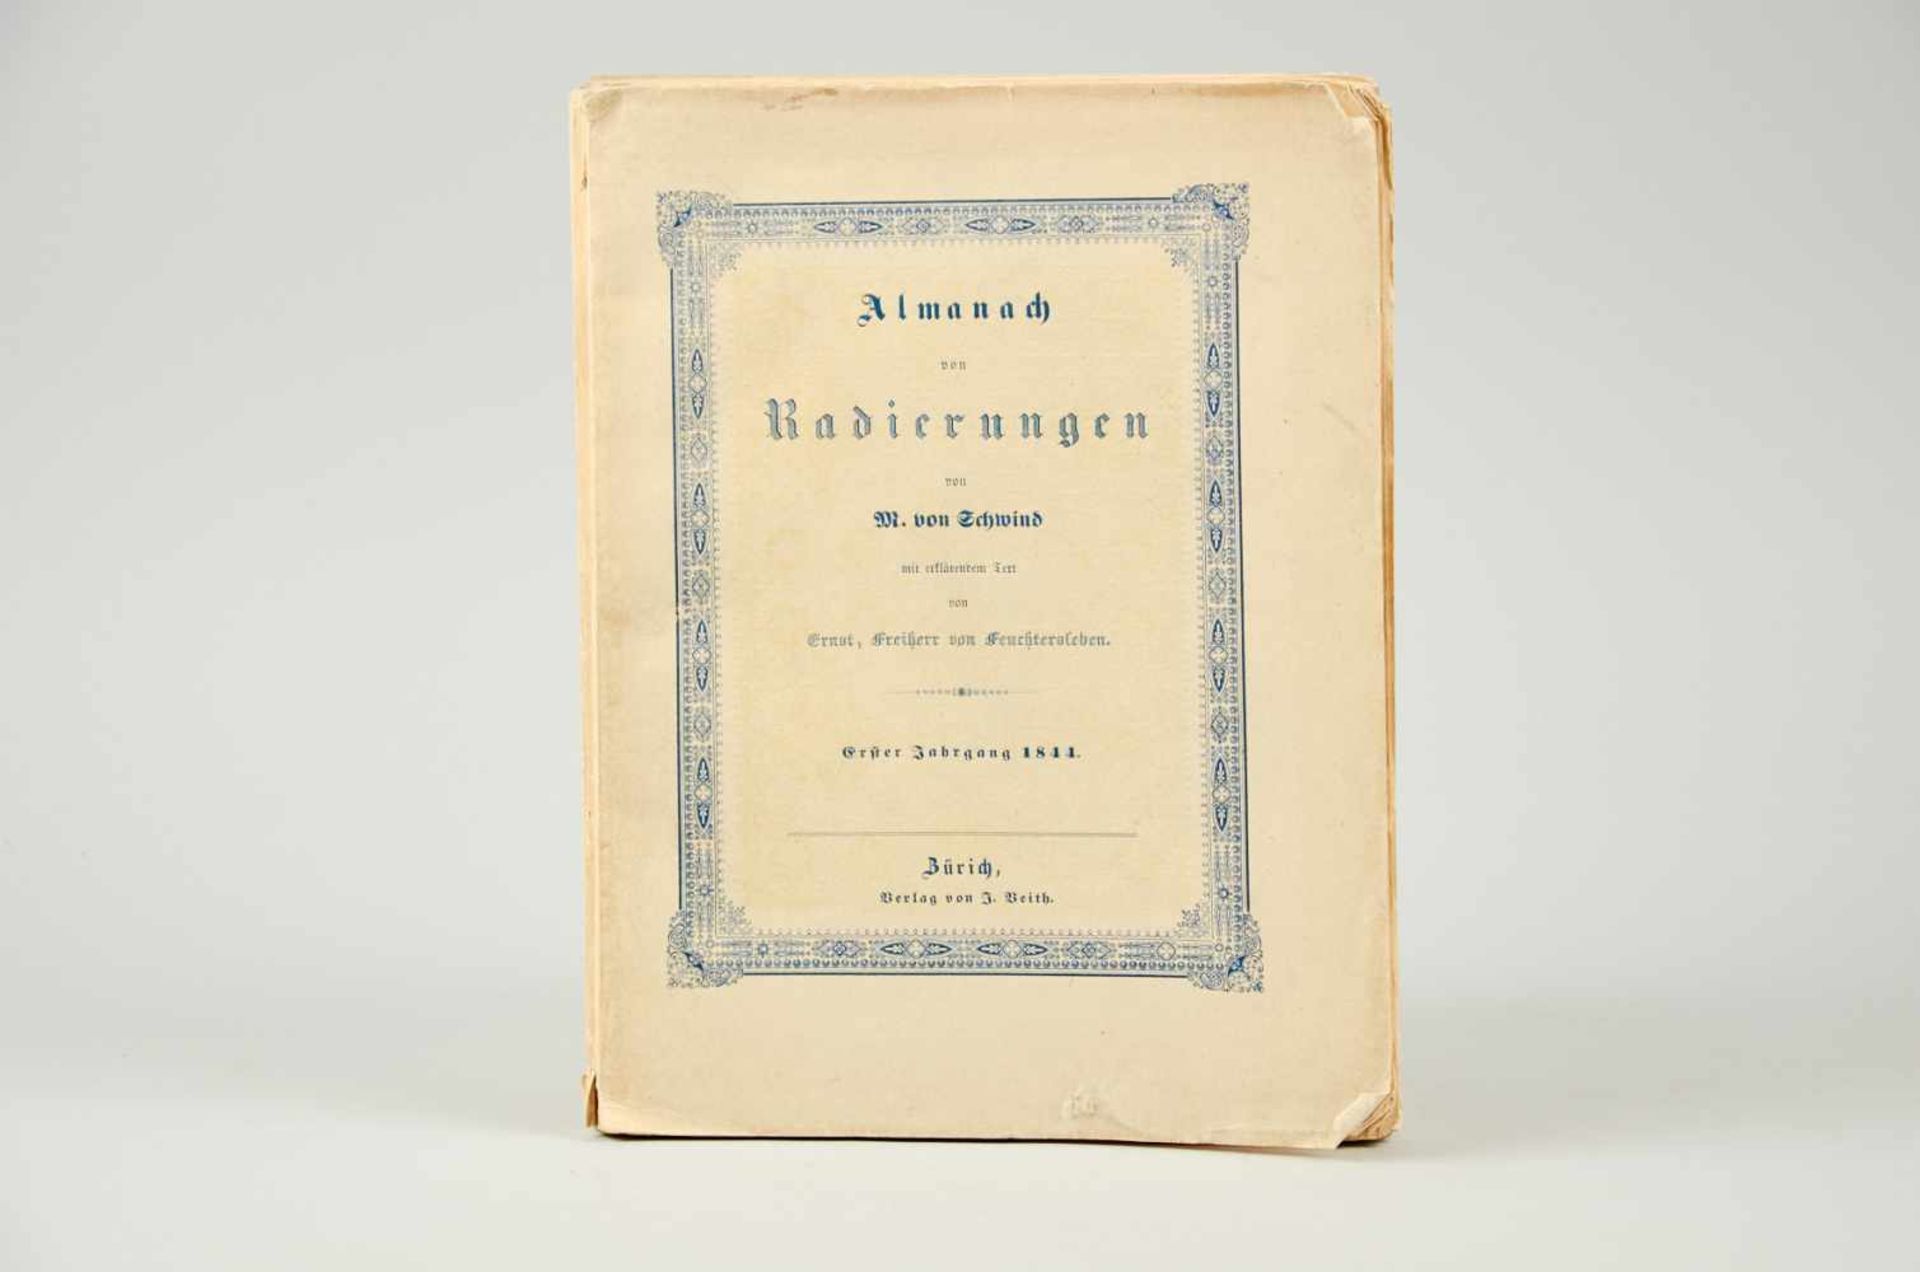 Schwind, M. von, Almanach von Radierungen.Mit erklärendem Text in Versen von Ernst, Freiherr von